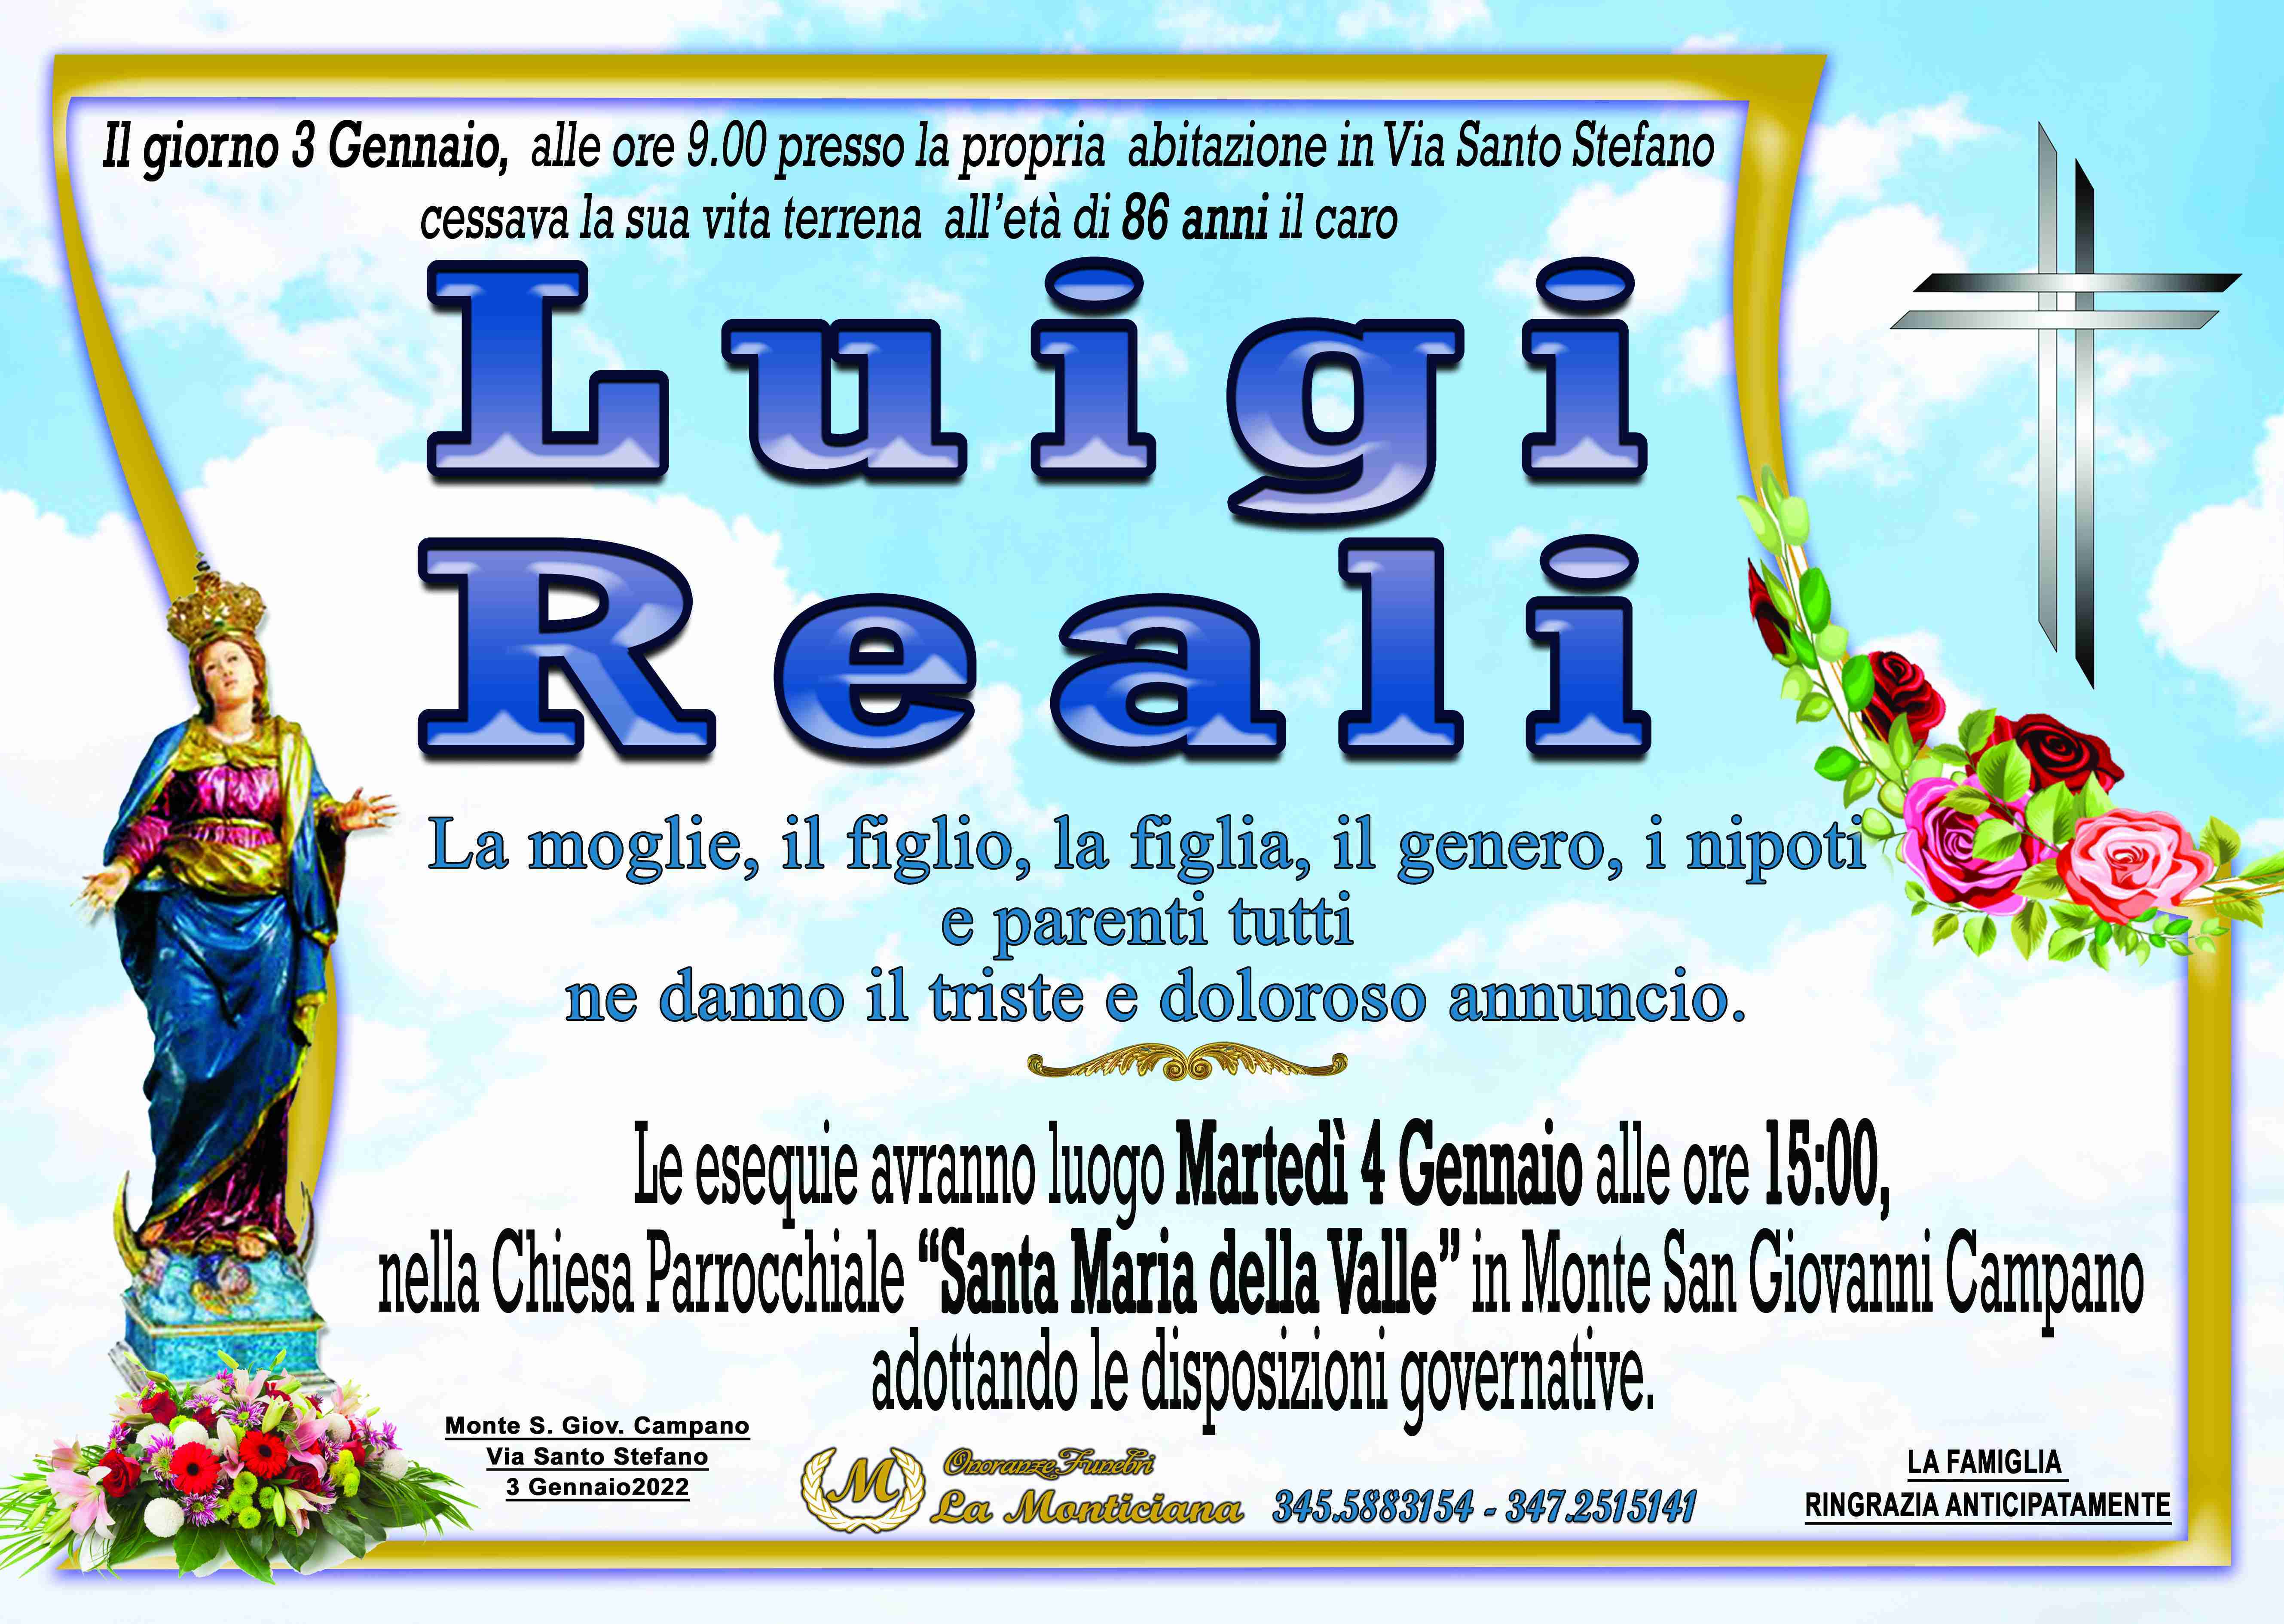 Luigi Reali